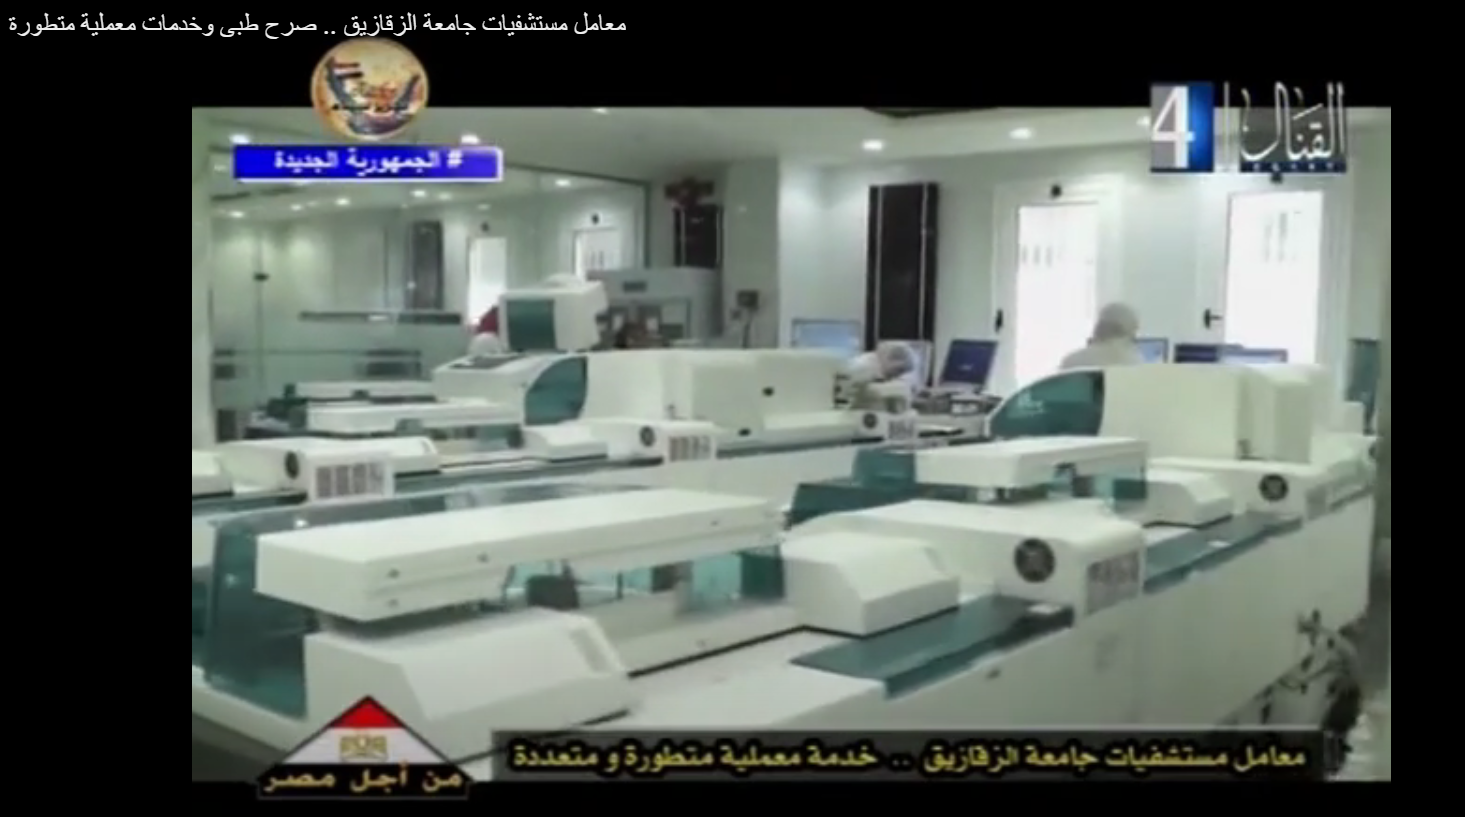 التلفزيون المصري يشيد بالأداء المتميز لمعامل كلية الطب البشري ومستشفيات جامعة الزقازيق